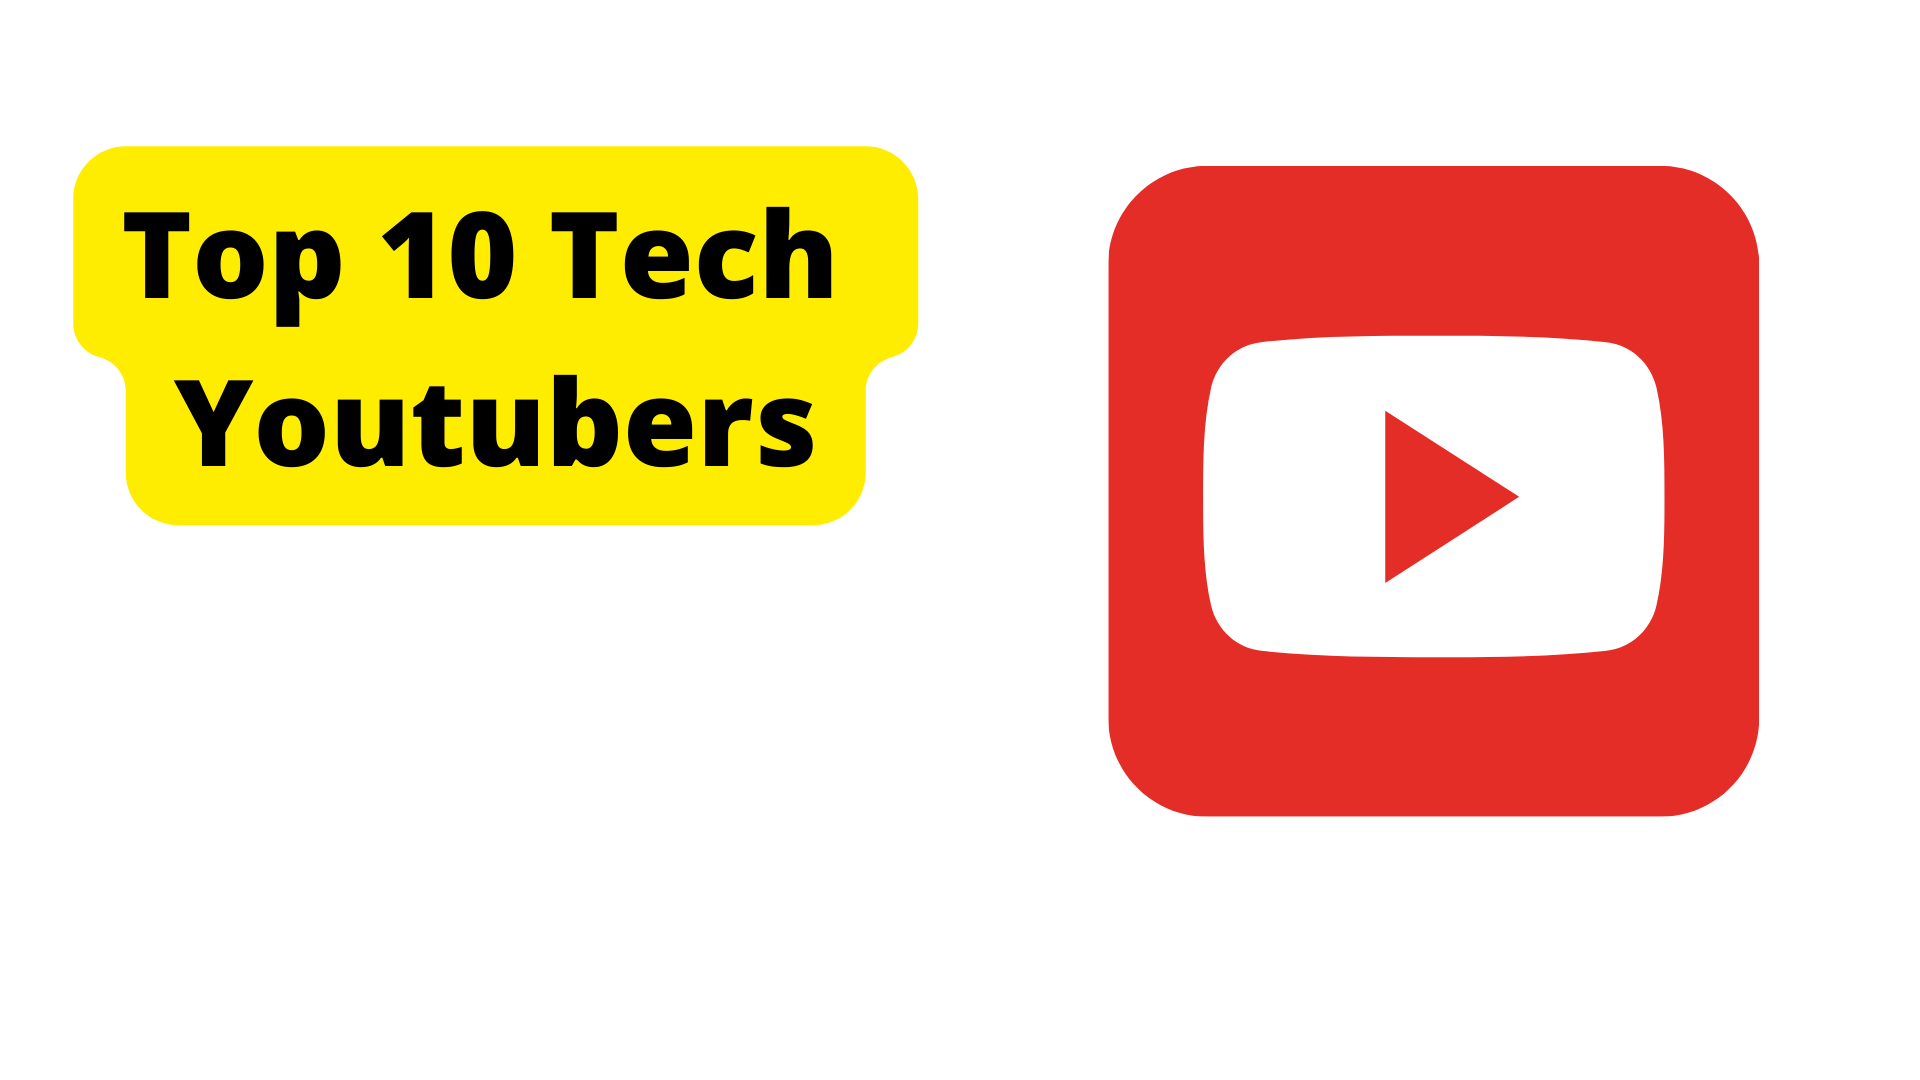 Top 10 tech YouTubers